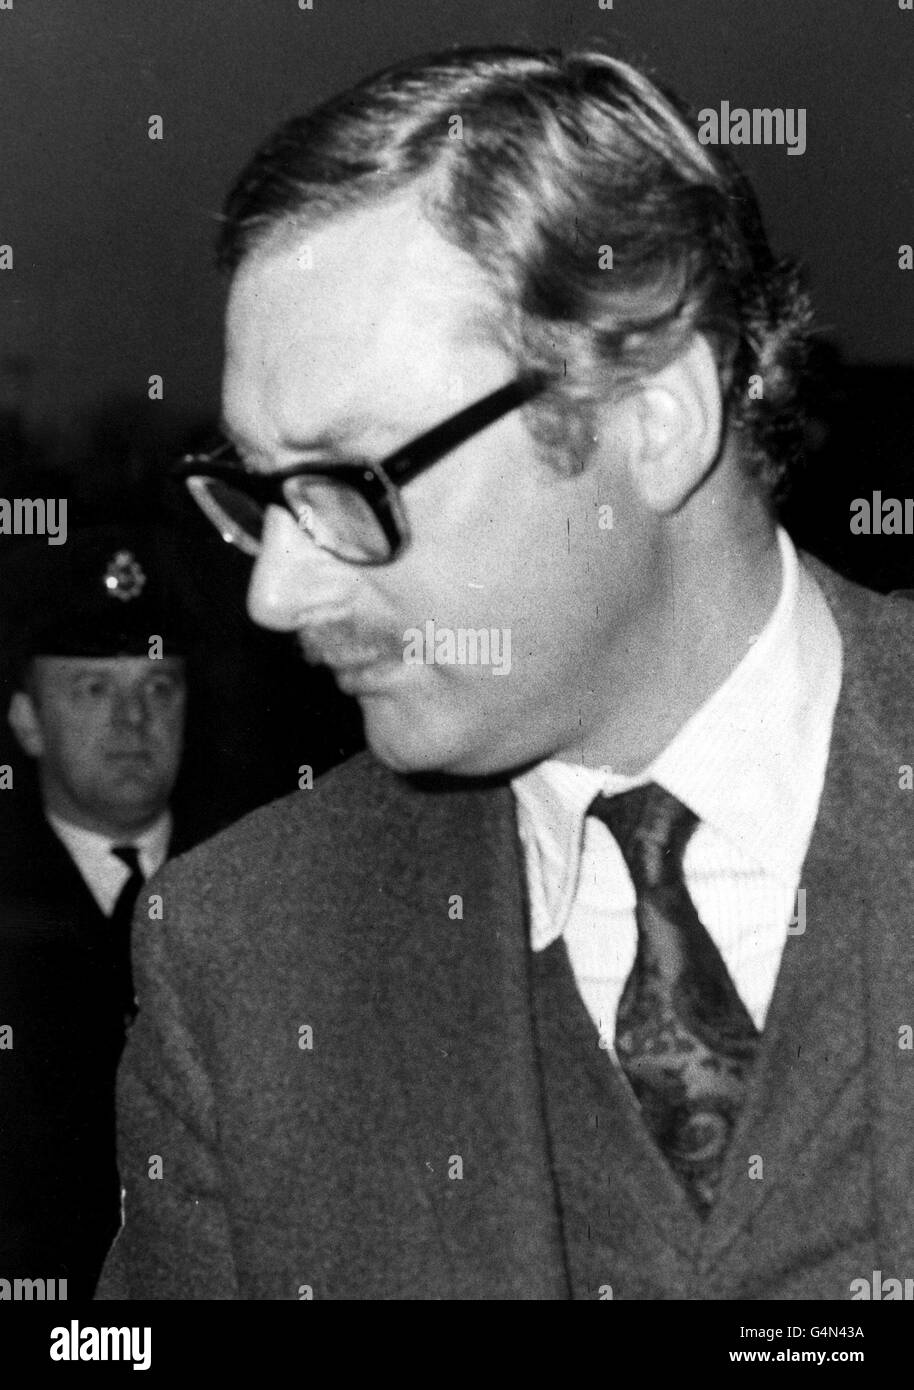 Bruce Reynolds in Linslade, Bedfordshire, der zum dritten Mal in Bedfordshire zurückgestellt wurde, wurde beschuldigt, 1963 in dem großen Eisenbahnraub betroffen zu sein. Nach einer zweiminütigen Anhörung wurde er bis zum 12/68 in Untersuchungshaft genommen. 28/12/68: Der Fall wird im Januar 1969 gehört werden. * 8/99: Reynolds, einer der Gäste bei der 70. Geburtstagsparty von Ronnie Biggs, 36 Jahre nach dem berüchtigten Verbrechen, das ihren Namen gemacht hat. Biggs, der 1965 aus dem Gefängnis Wandsworth flüchtete, soll in seinem bescheidenen Haus in Rio de Janeiro eine Geburtstagsfeier veranstalten, wo er über die Fänge der Briten hinaus gelebt hat Stockfoto